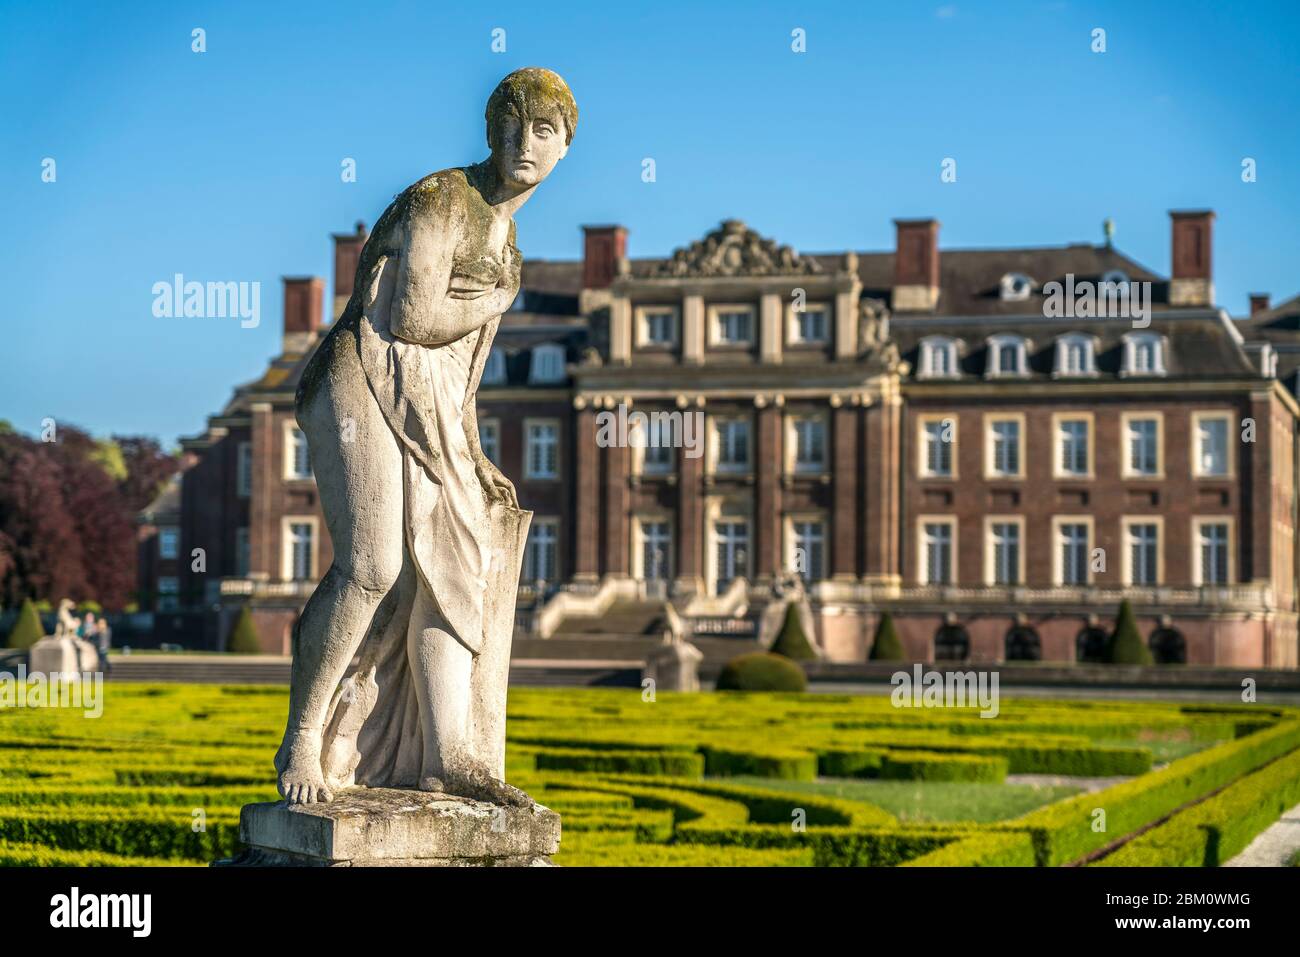 Statue de vor dem Schloss Nordkirchen, Nordkirchen, Münsterland, Nordrhein-Westfalen, Deutschland, Europa | Statue en face du château de Schloss Nordkirchen Banque D'Images